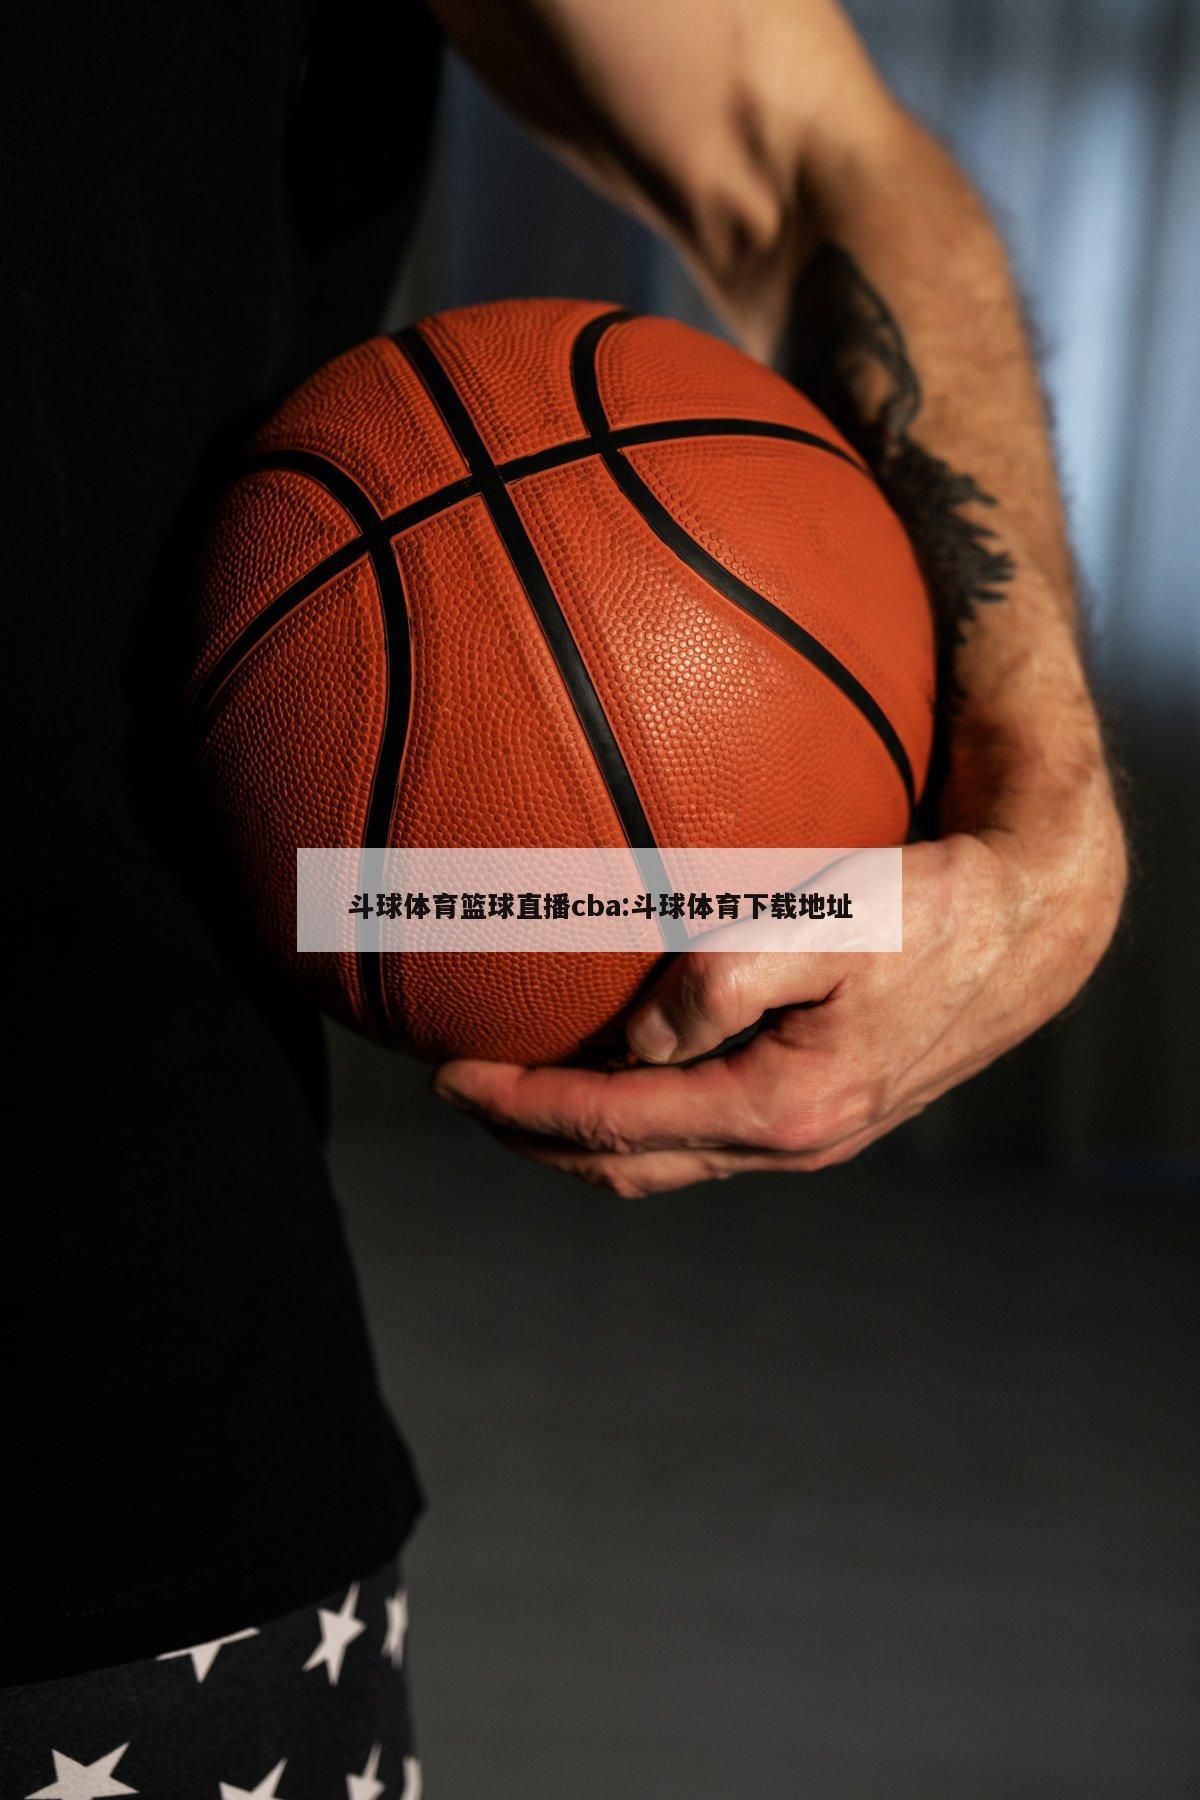 斗球体育篮球直播cba:斗球体育下载地址